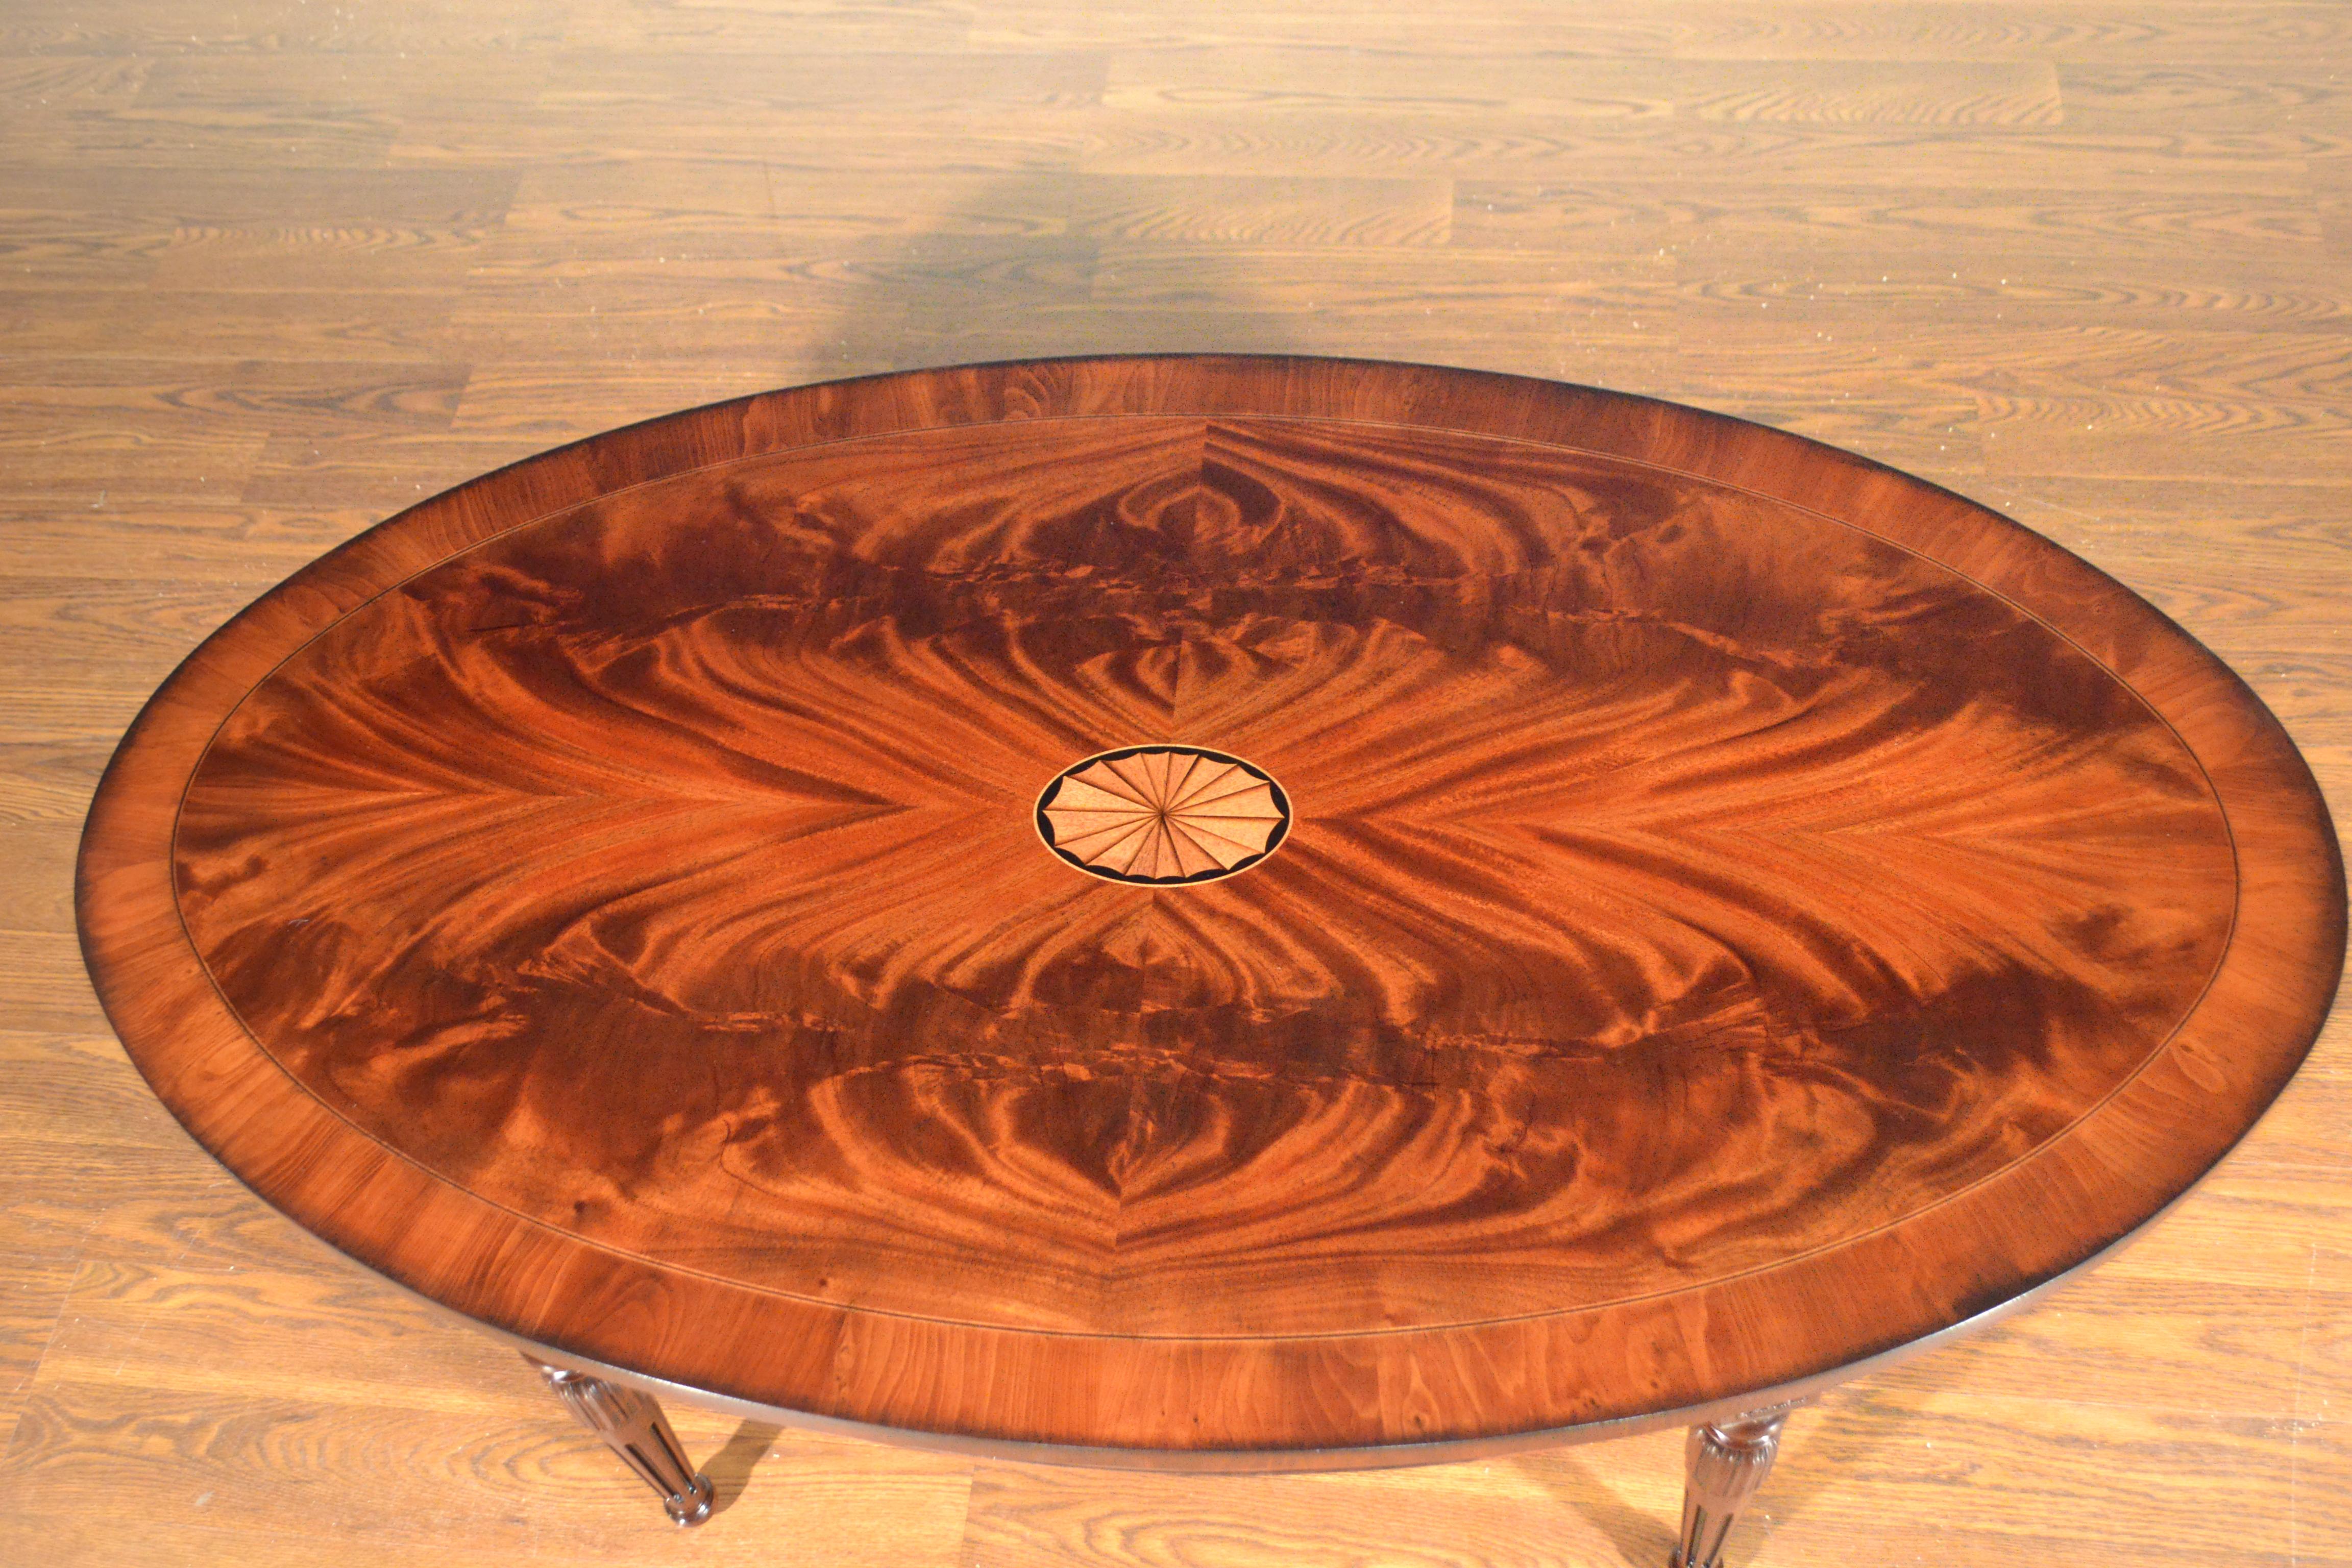 Il s'agit d'une table basse ovale traditionnelle en acajou fabriquée sur commande dans l'atelier de Leighton Hall. Il présente un champ d'acajou réservé et abouté et une bordure de bois d'if avec un médaillon central. Il a une finition semi-lustrée